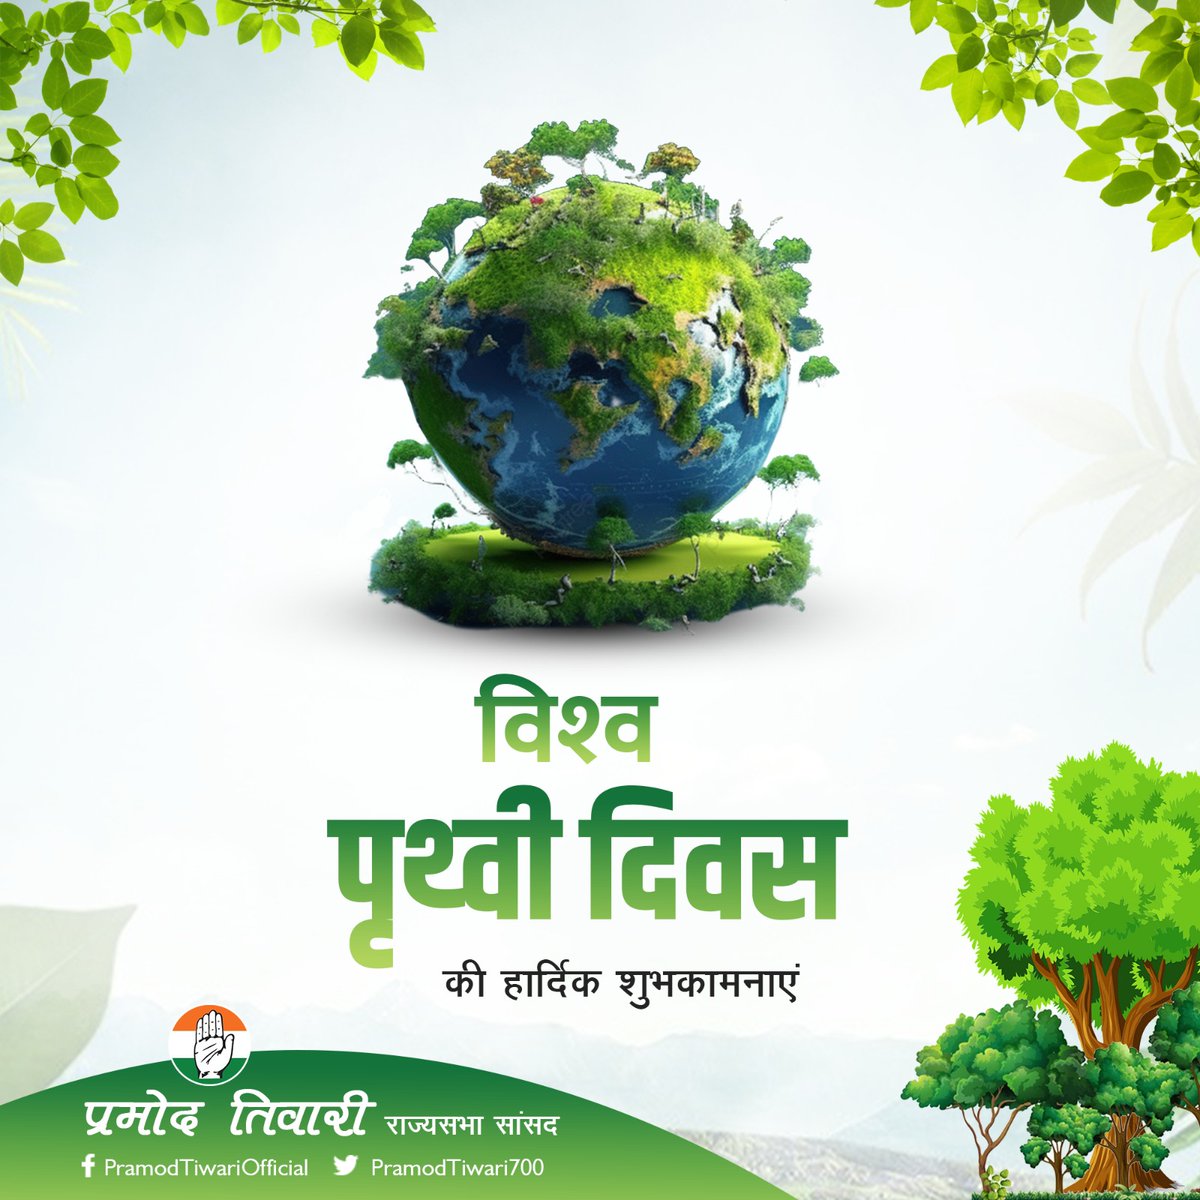 पर्यावरण से संतुलन और समन्वय बनाकर रखना विश्व पृथ्वी दिवस मनाने का सबसे सारगर्भित उदाहरण होगा। आइए हम सब मिलकर अपनी धरती को बचाने का संकल्प लें। #विश्व_पृथ्वी_दिवस